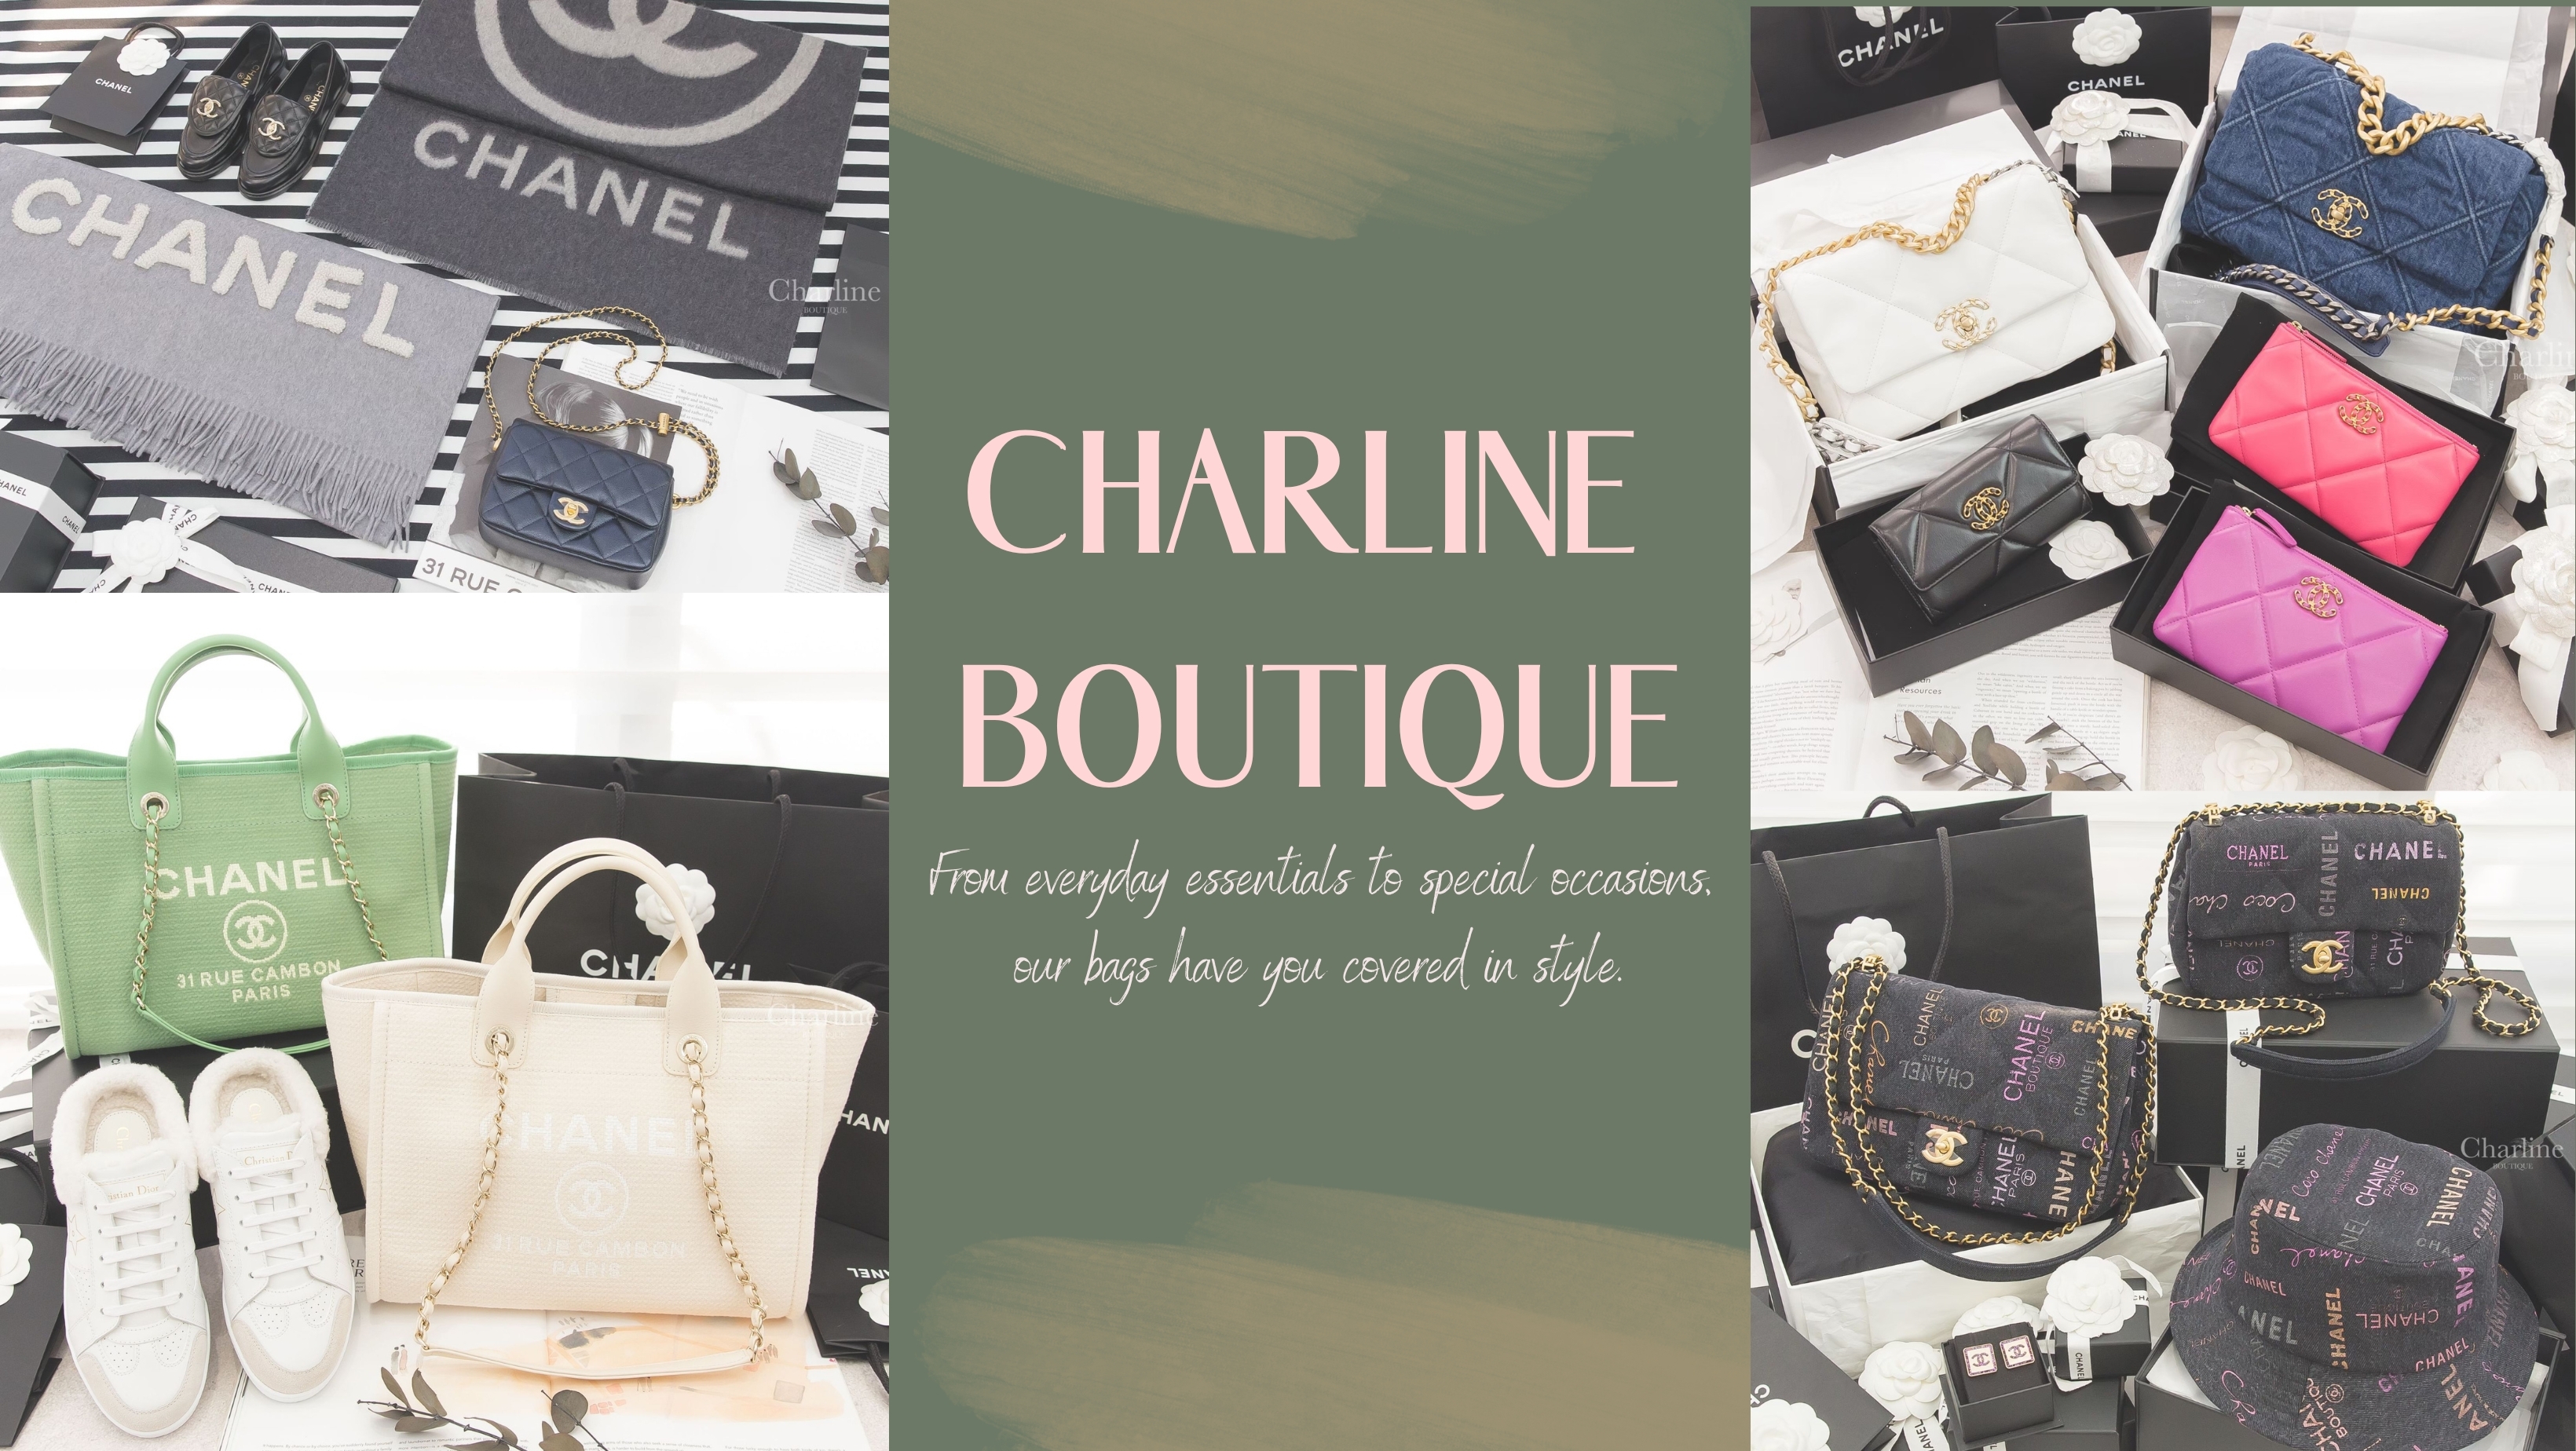 解鎖Chanel獨特魅力，實現時尚夢想！香奈兒全球統一價格政策，讓購物更公平。限購政策增加商品珍貴性。選購Chanel，多元渠道探索，關注最新消息。排隊耐心等候，建立忠誠度，參加特殊活動。與Chanel代購小編聯繫，專業解答，全球奔波採購，找到獨特時尚寶貝。與Charline Boutique共追逐香奈兒夢想，品味經典魅力，購物成時尚盛宴！